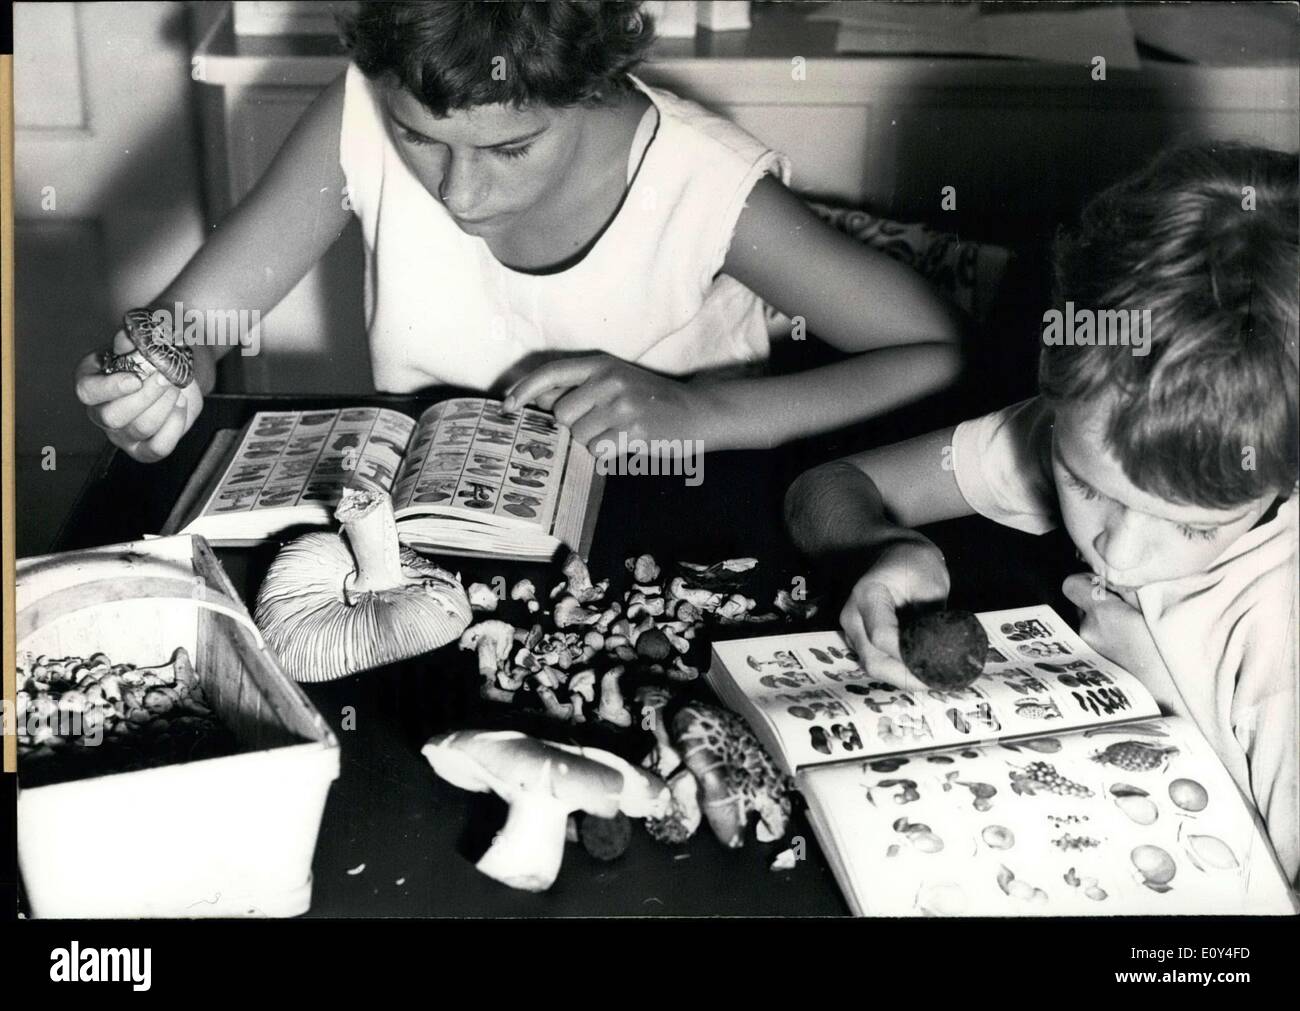 Agosto 06, 1968 - Nella foto sono i bambini che stanno individuando i funghi. La didascalia di questa immagine informa il lettore su diversi tipi di funghi come pure i pericoli di funghi velenosi. Foto Stock